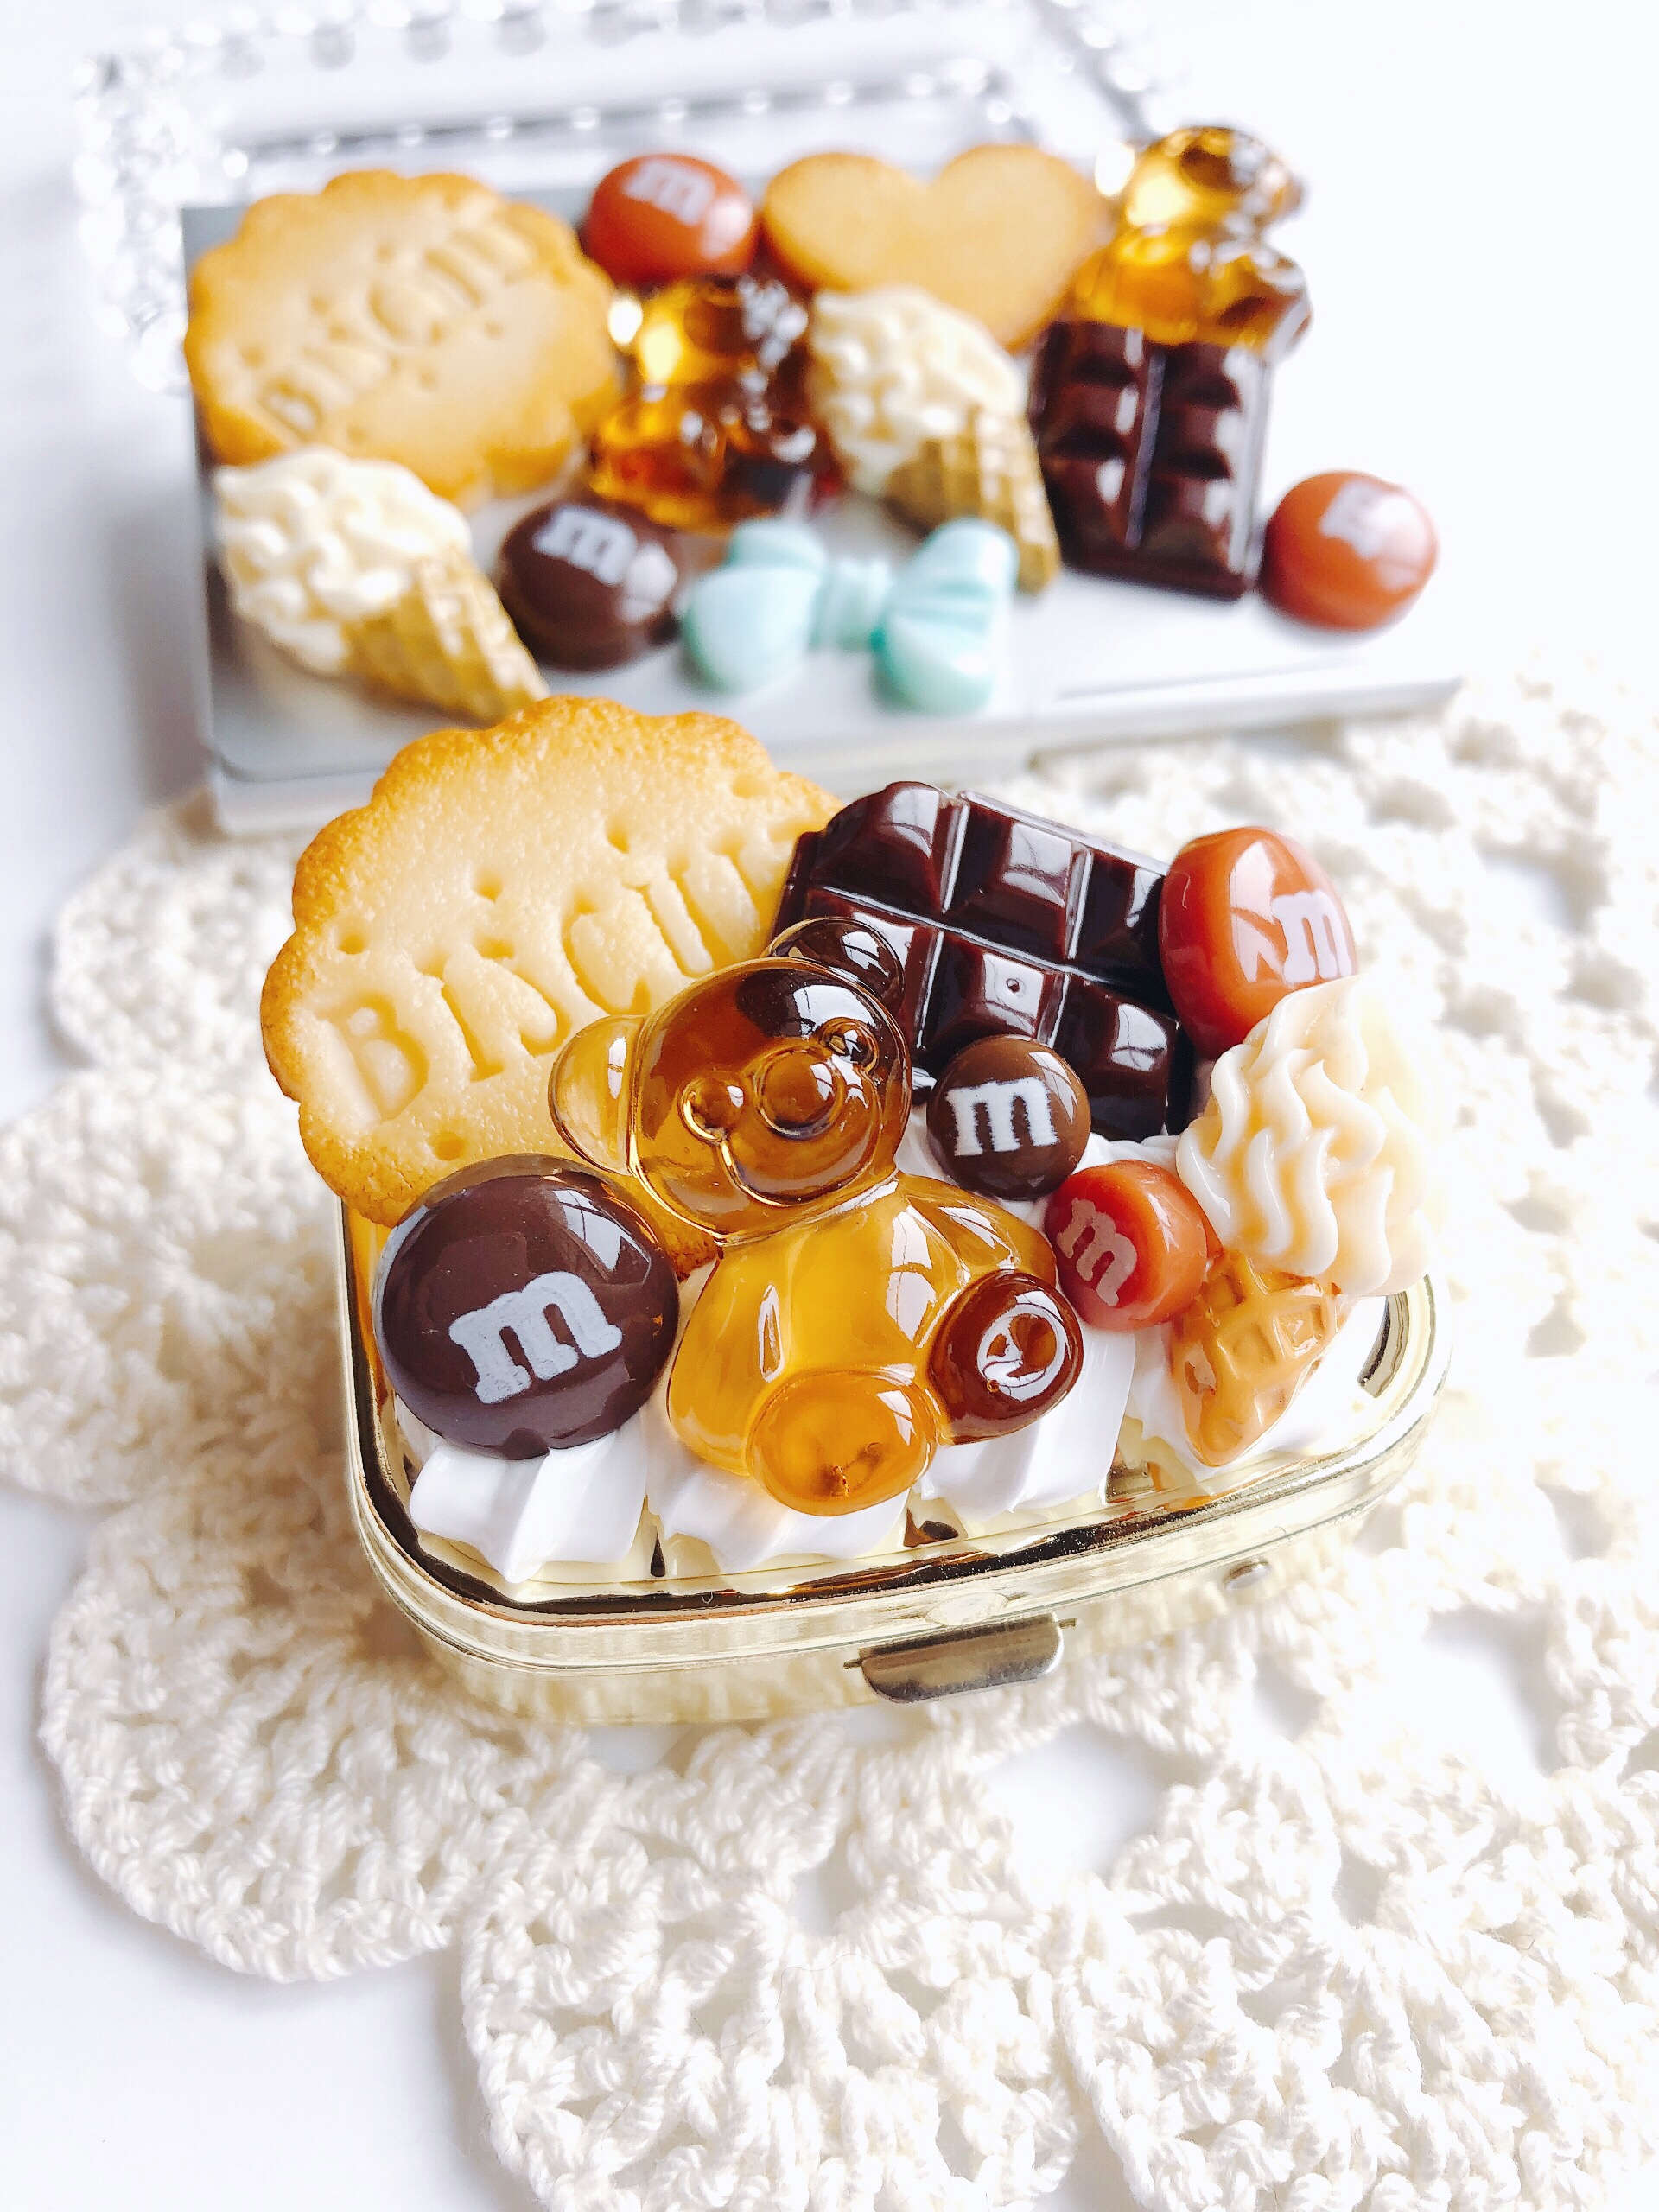 お菓子のピルケース Candy Pop Chocolate スイーツデコ Iichi ハンドメイド クラフト作品 手仕事品の通販